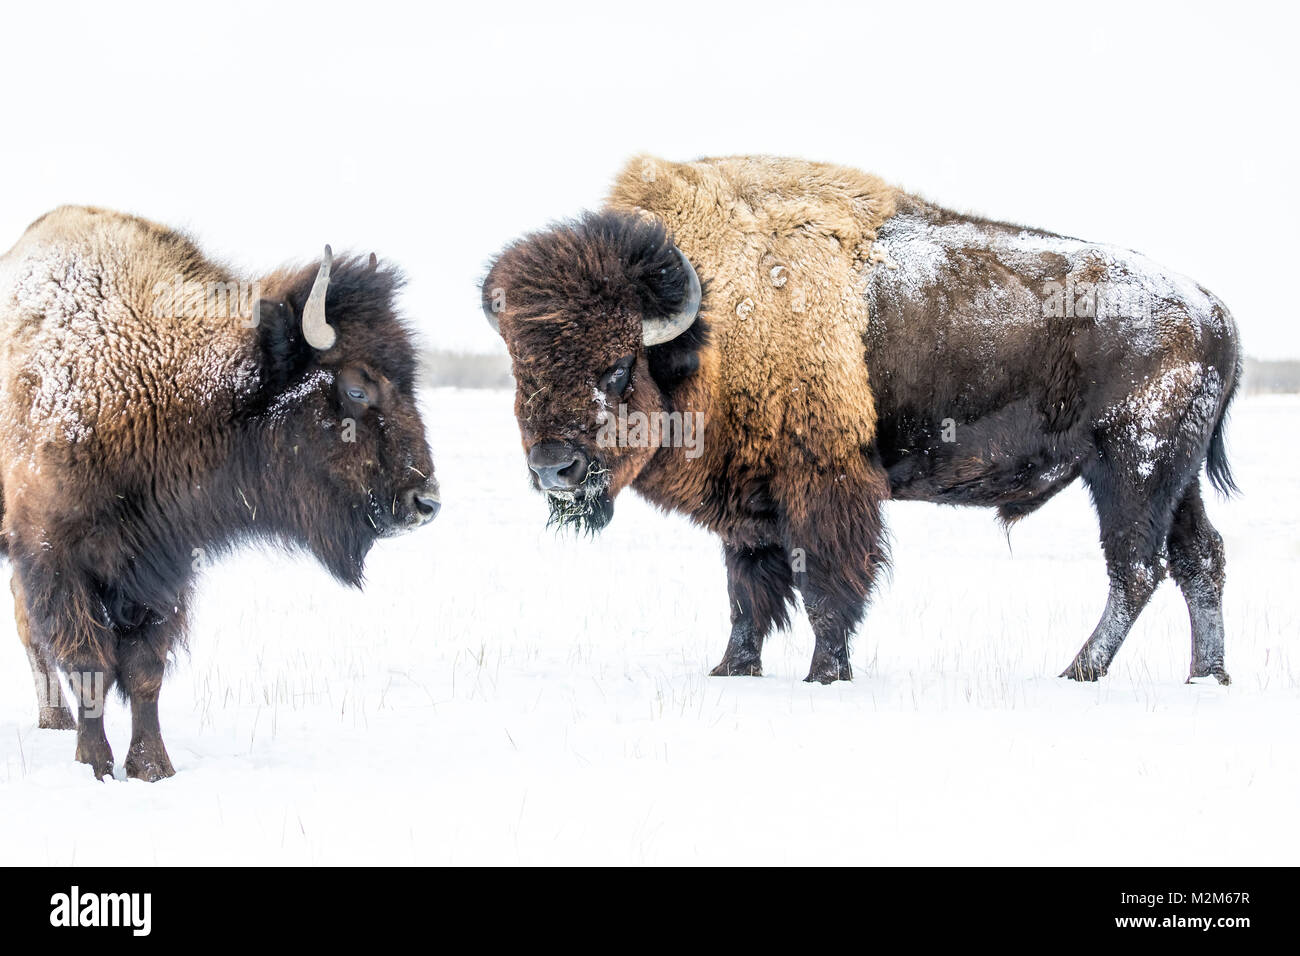 Le bison des plaines, Bull, ou Bison (Bison bison bison) en hiver, Manitoba, Canada. Banque D'Images